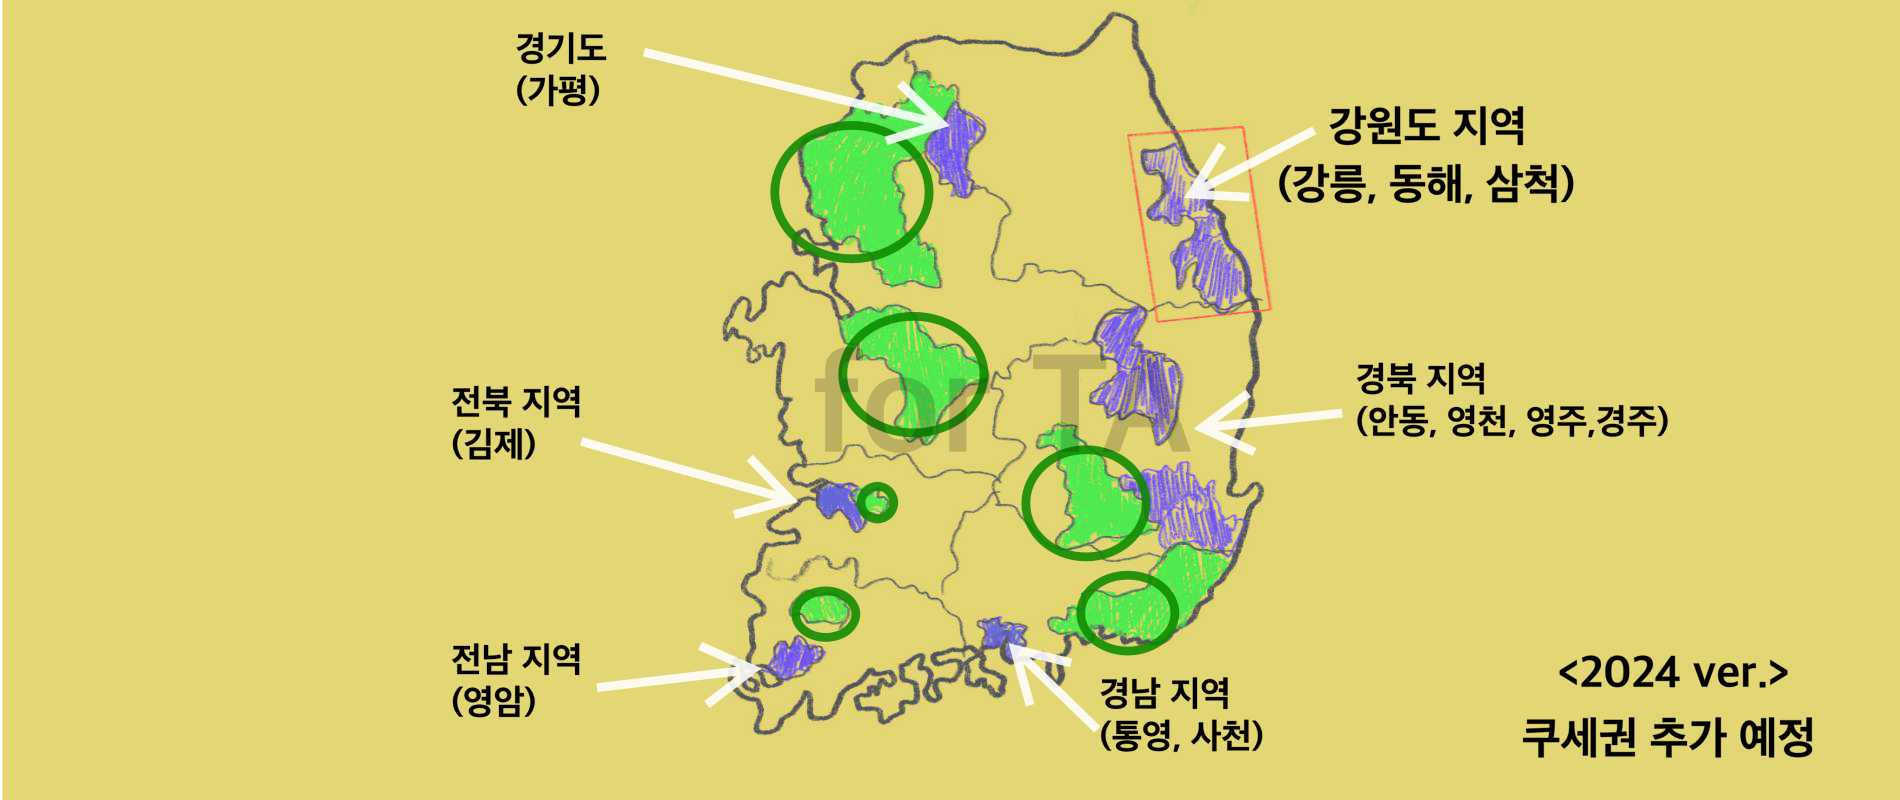 쿠팡 새벽배송 가능 지역을 나타내는 쿠세권 지도